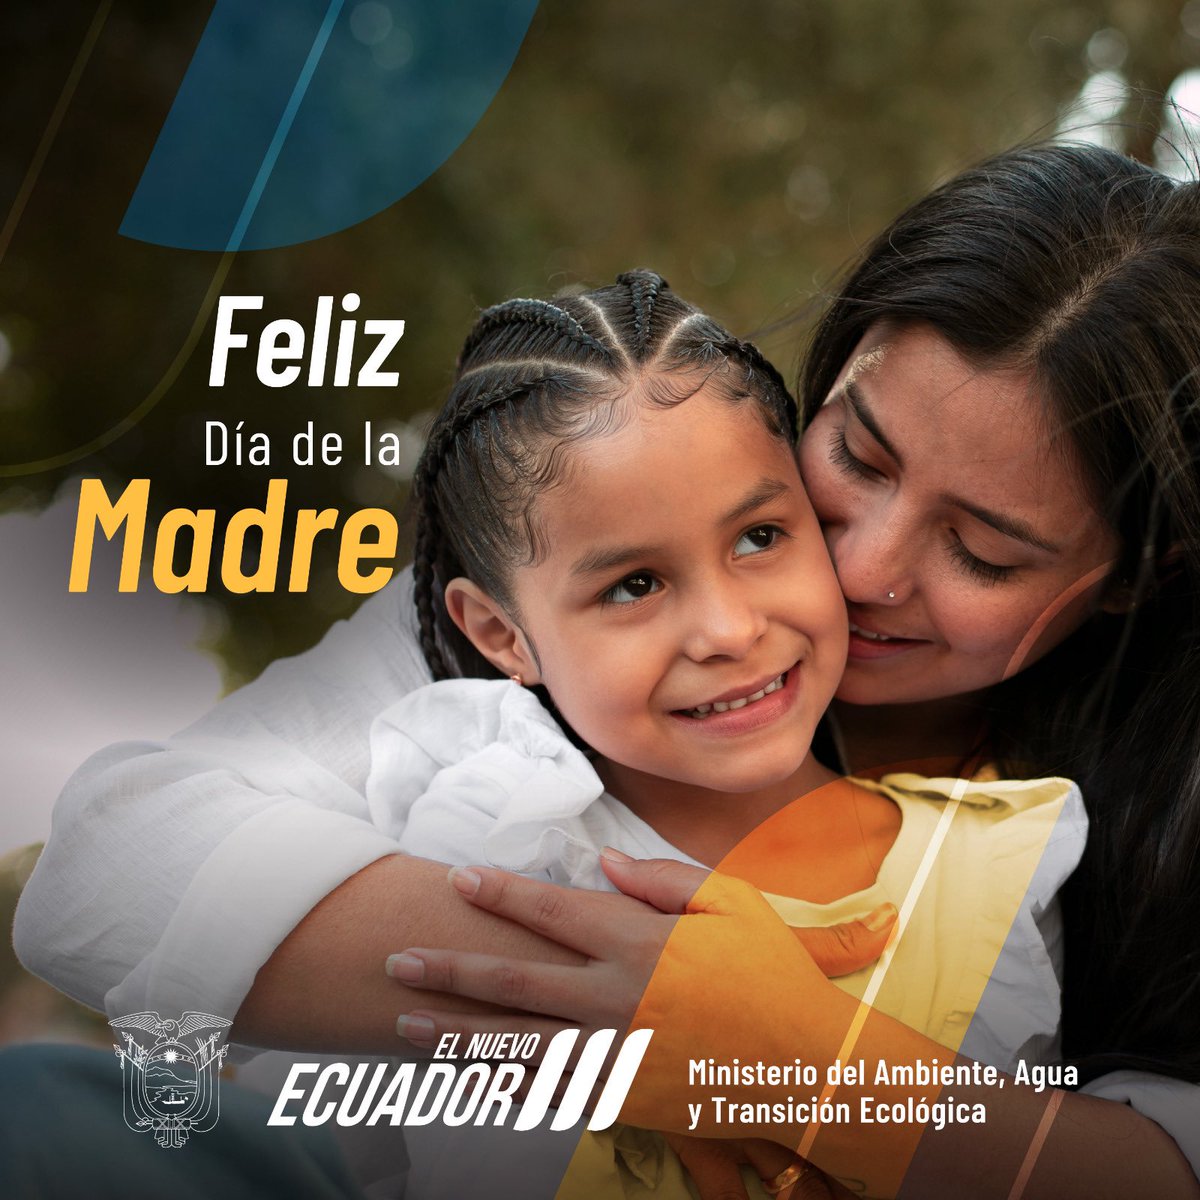 #FelizDíaDeLaMadre Hoy, celebramos a todas las madres del mundo, especialmente a aquellas que aportan para lograr un ambiente más limpio, sostenible y saludable. Gracias por ser ejemplo de cuidado y protección en beneficio de sus hijos y del planeta. 💓❤️🧡💛💙 #DíaDeLaMadre